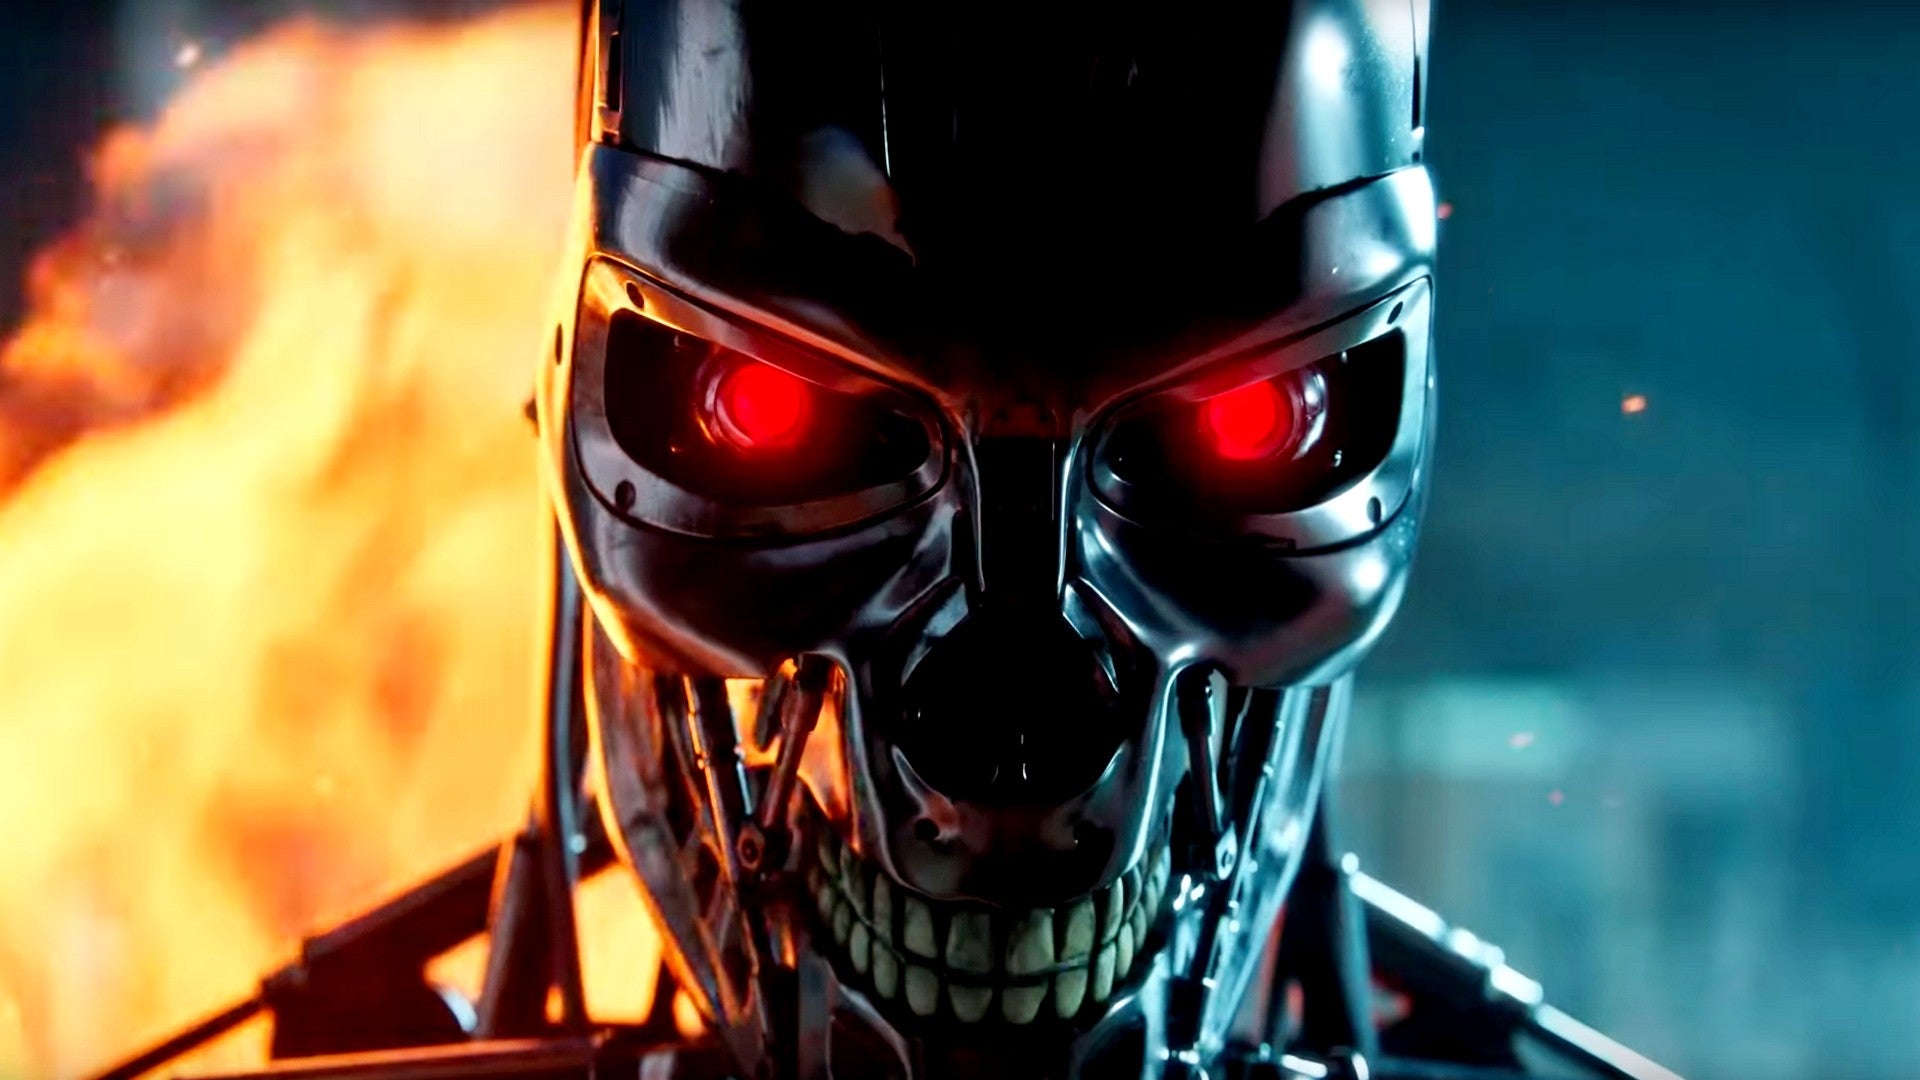 Bilder zu Terminator: Neues Survival-Spiel lässt euch ums Überleben kämpfen